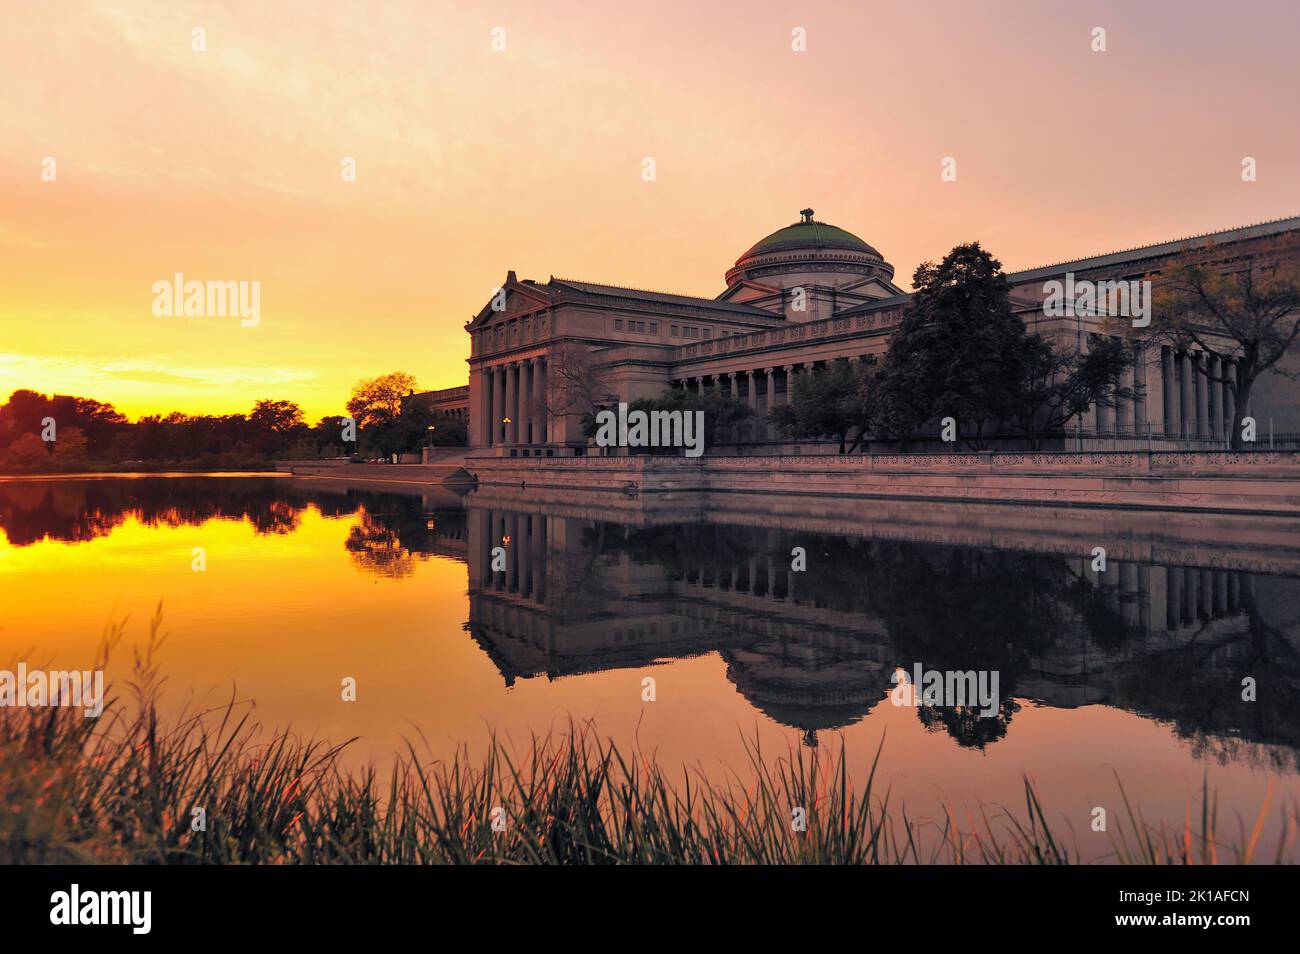 Chicago, Illinois, États-Unis. Musée des sciences et de l'industrie fournissant une image miroir dans un étang réfléchissant juste avant le coucher du soleil. Banque D'Images